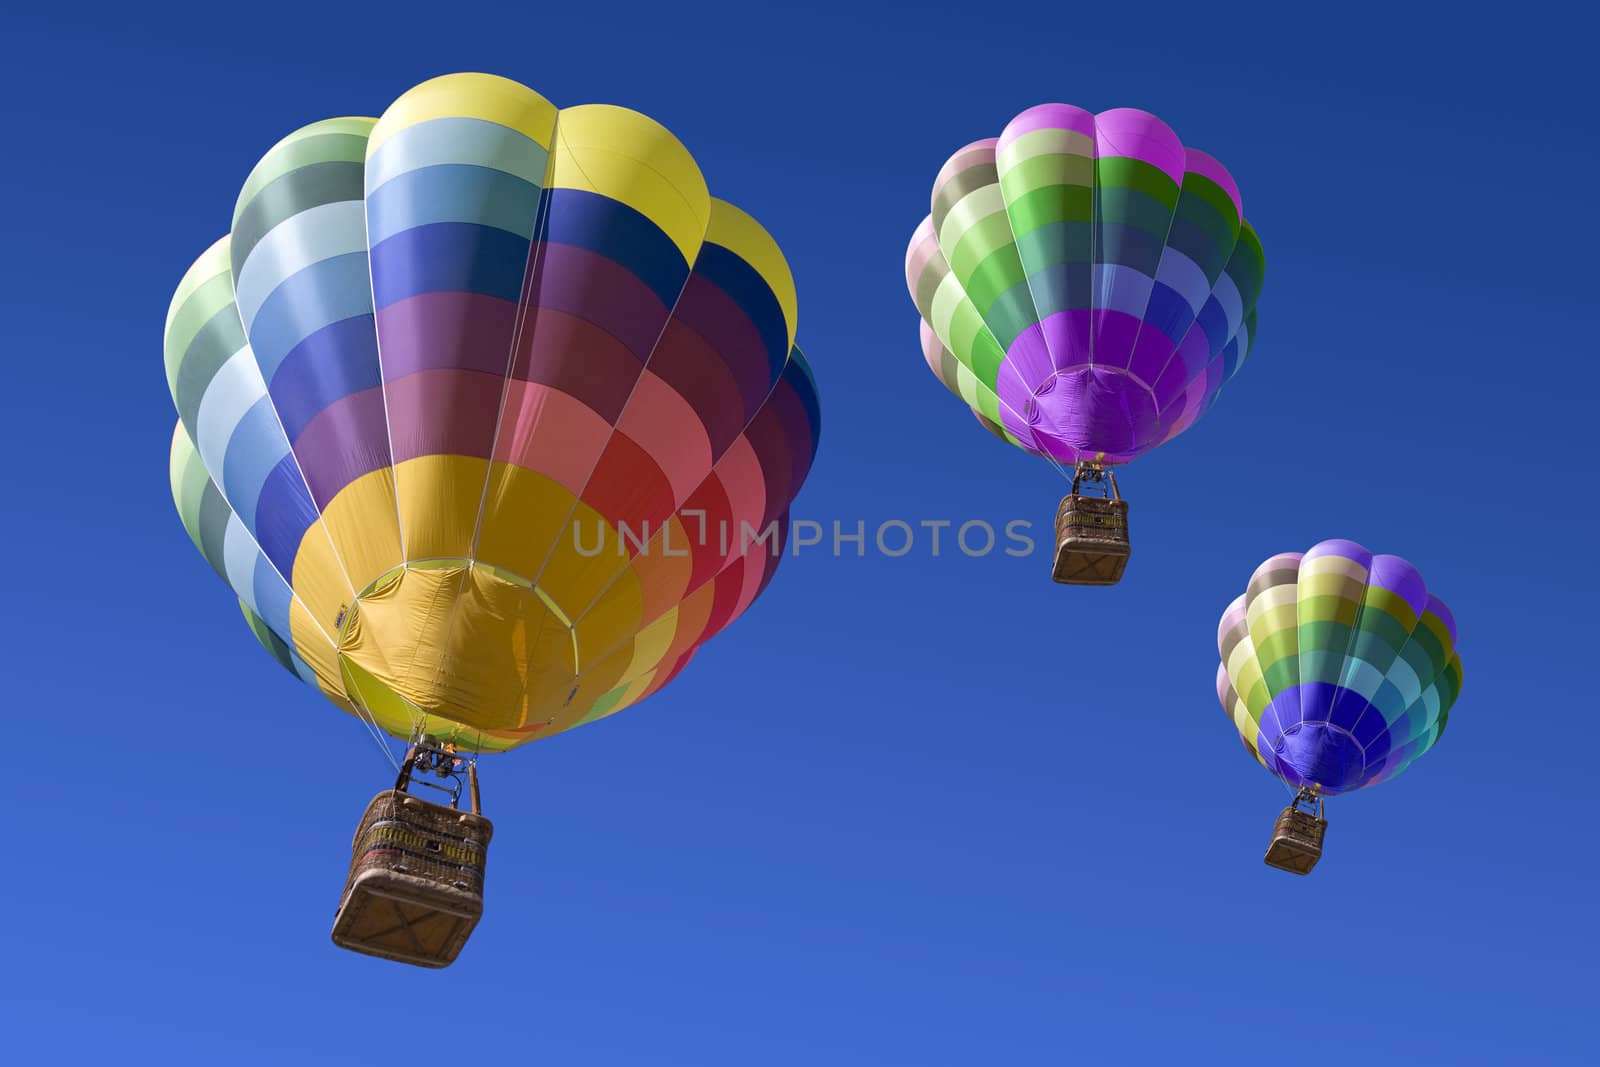 Hot air balloons by benjaminet